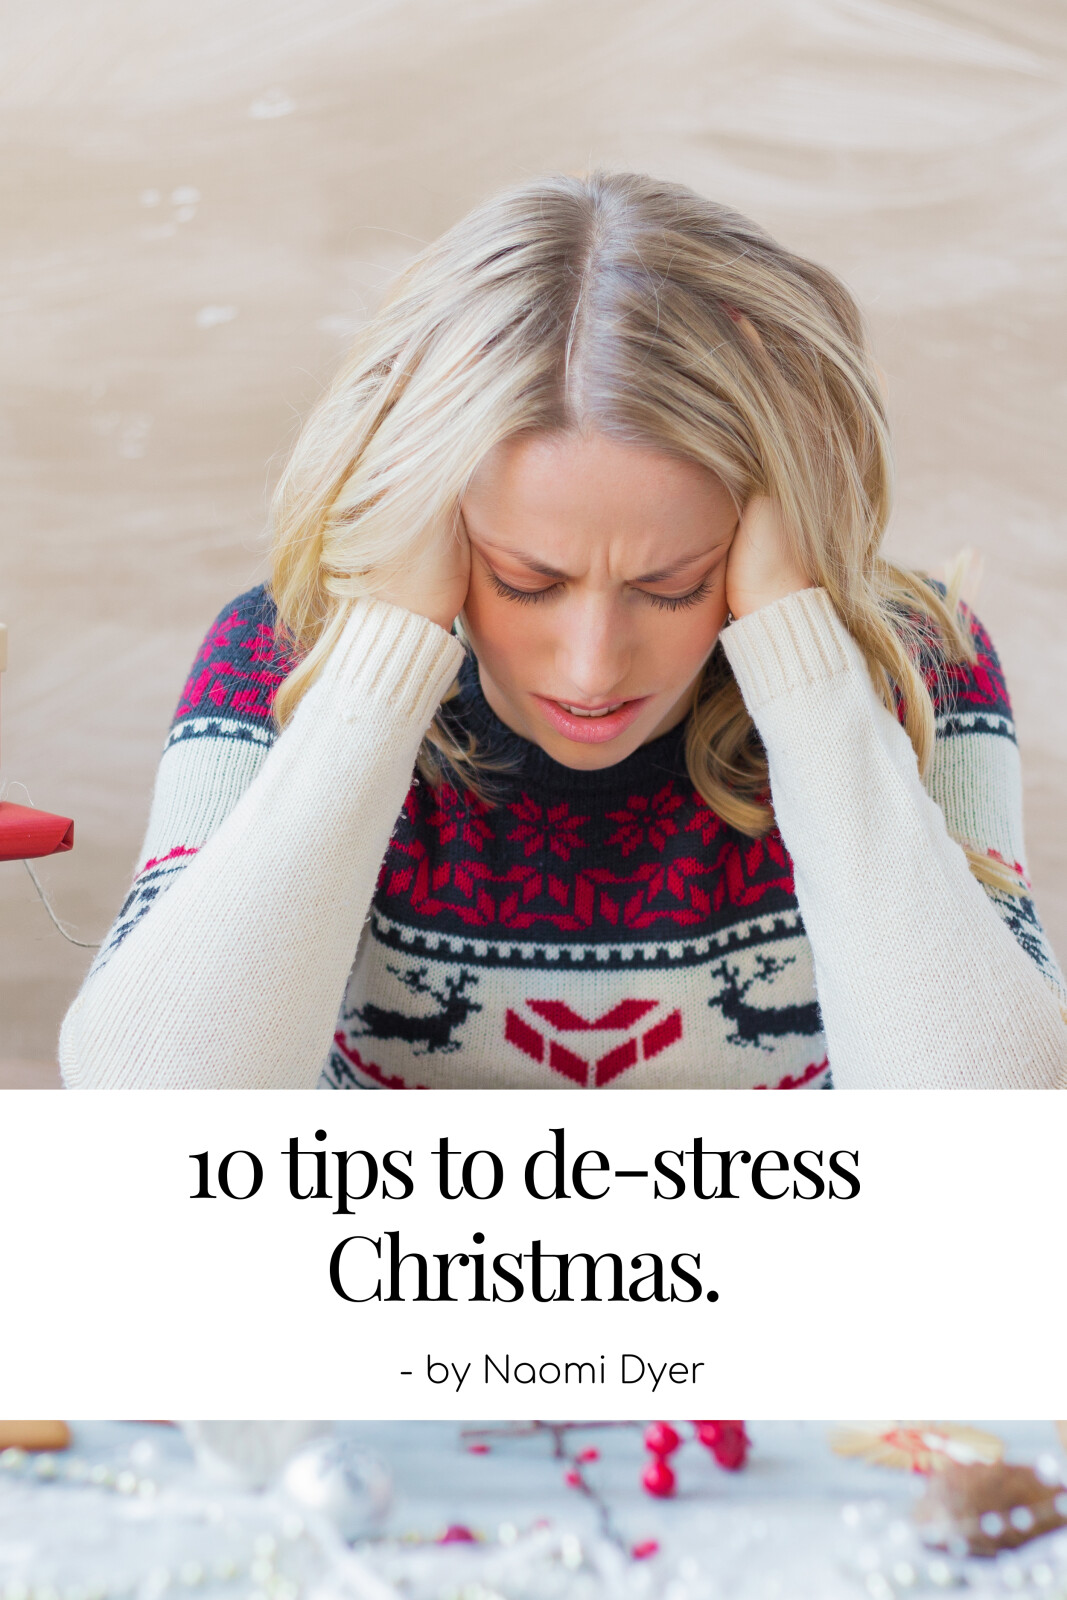 10 tips to delete Christmas stress!